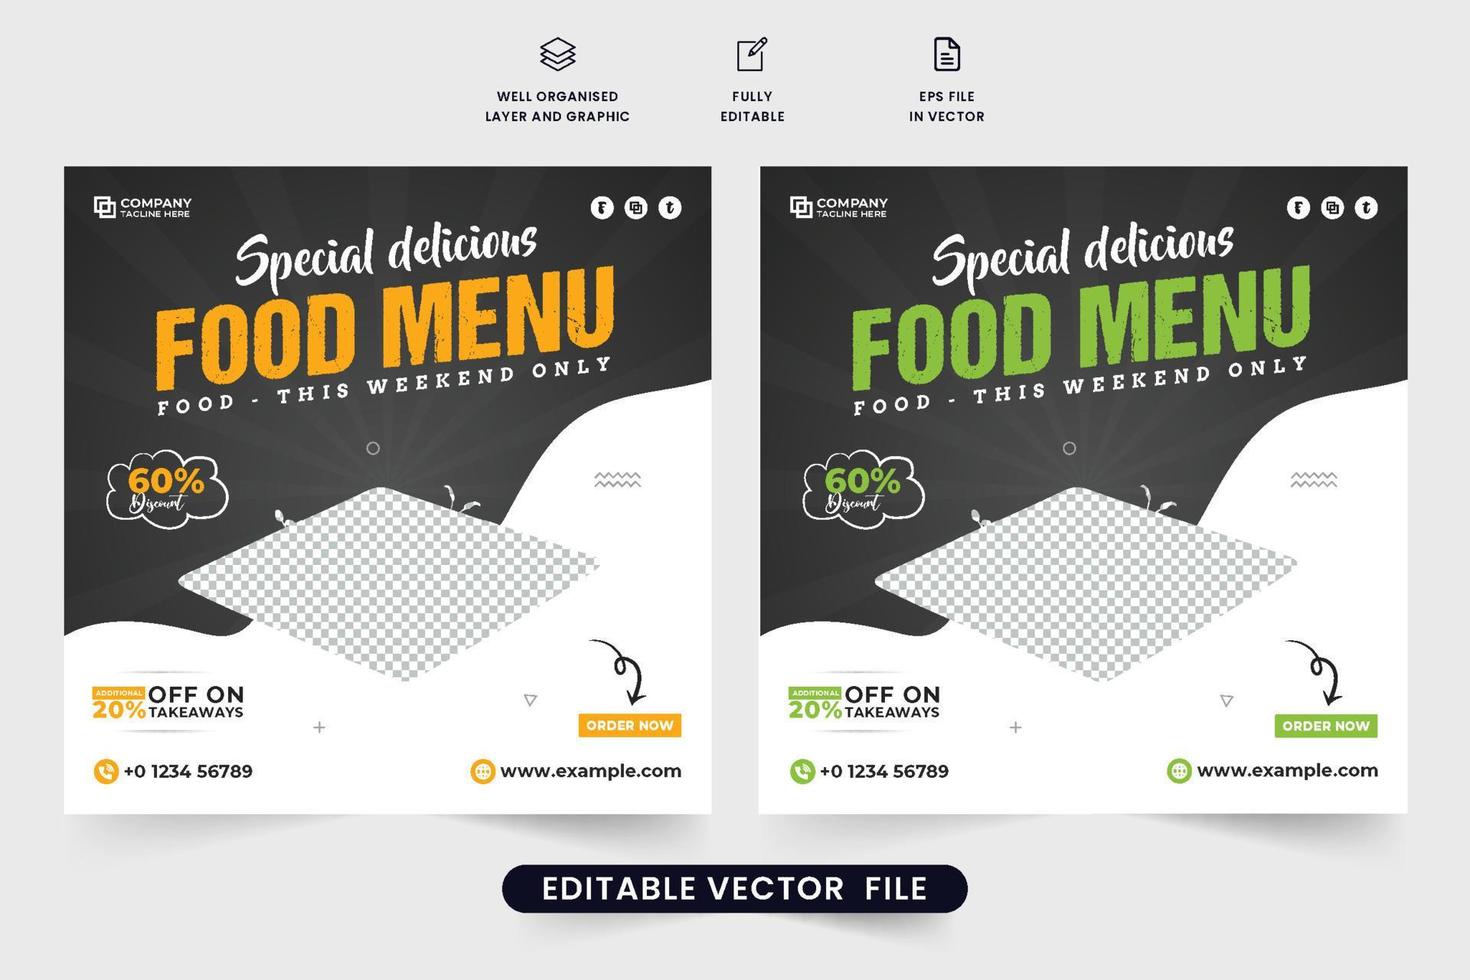 speciaal voedsel menu ontwerp met donker achtergronden voor digitaal marketing. modern restaurant sociaal media post vectoren met abstract vormen. heerlijk voedsel advertentie poster ontwerp voor restaurants.